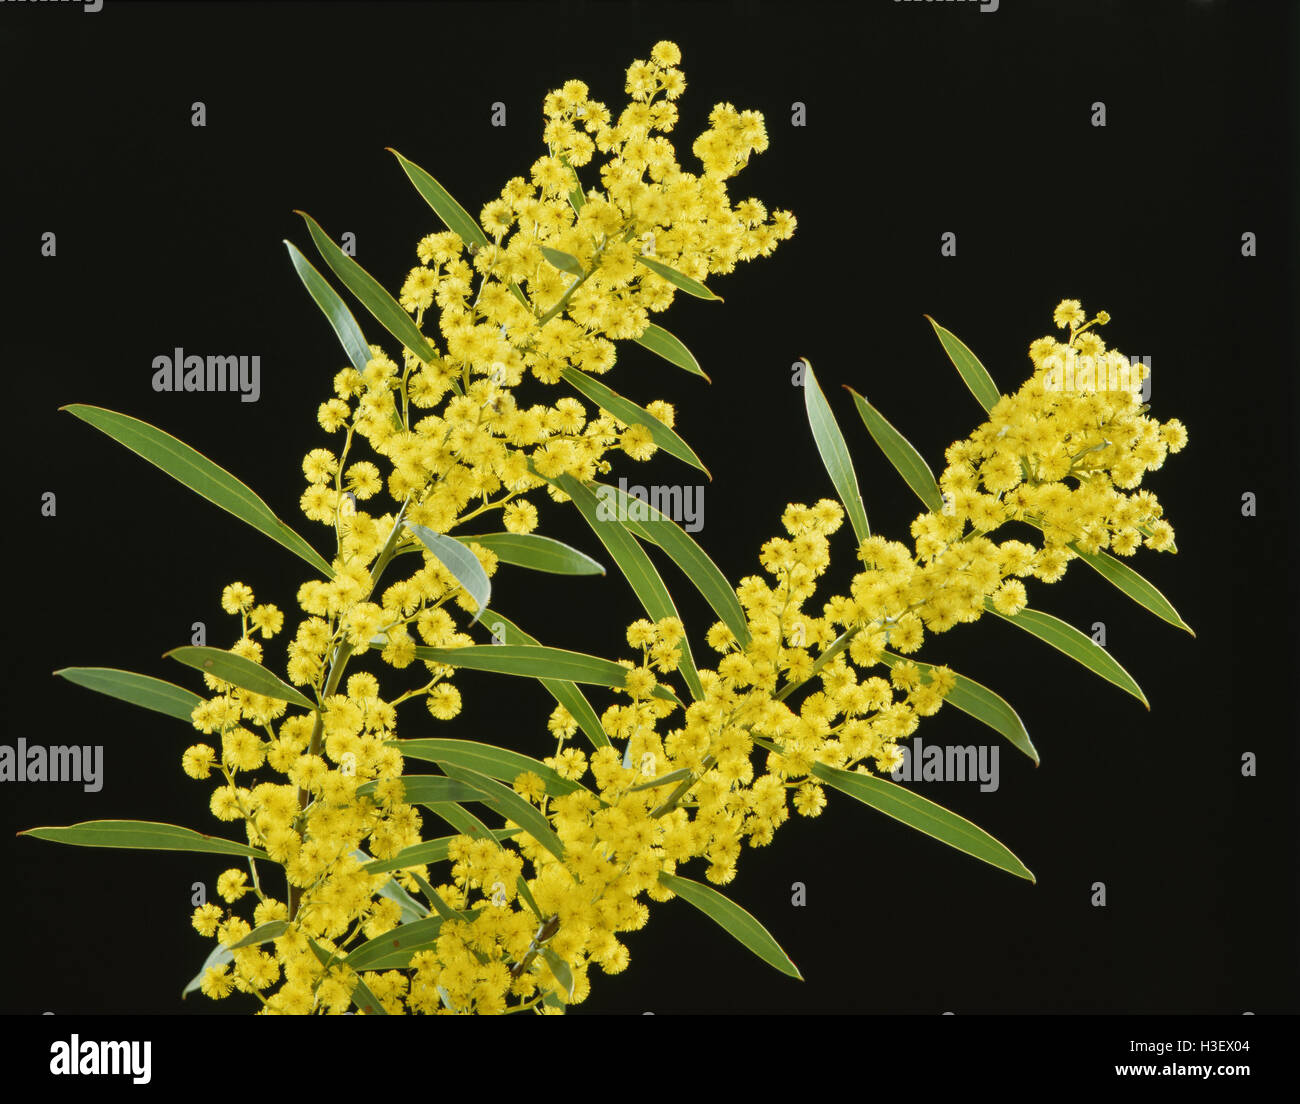 Golden wattle (Acacia pycnantha) Stock Photo